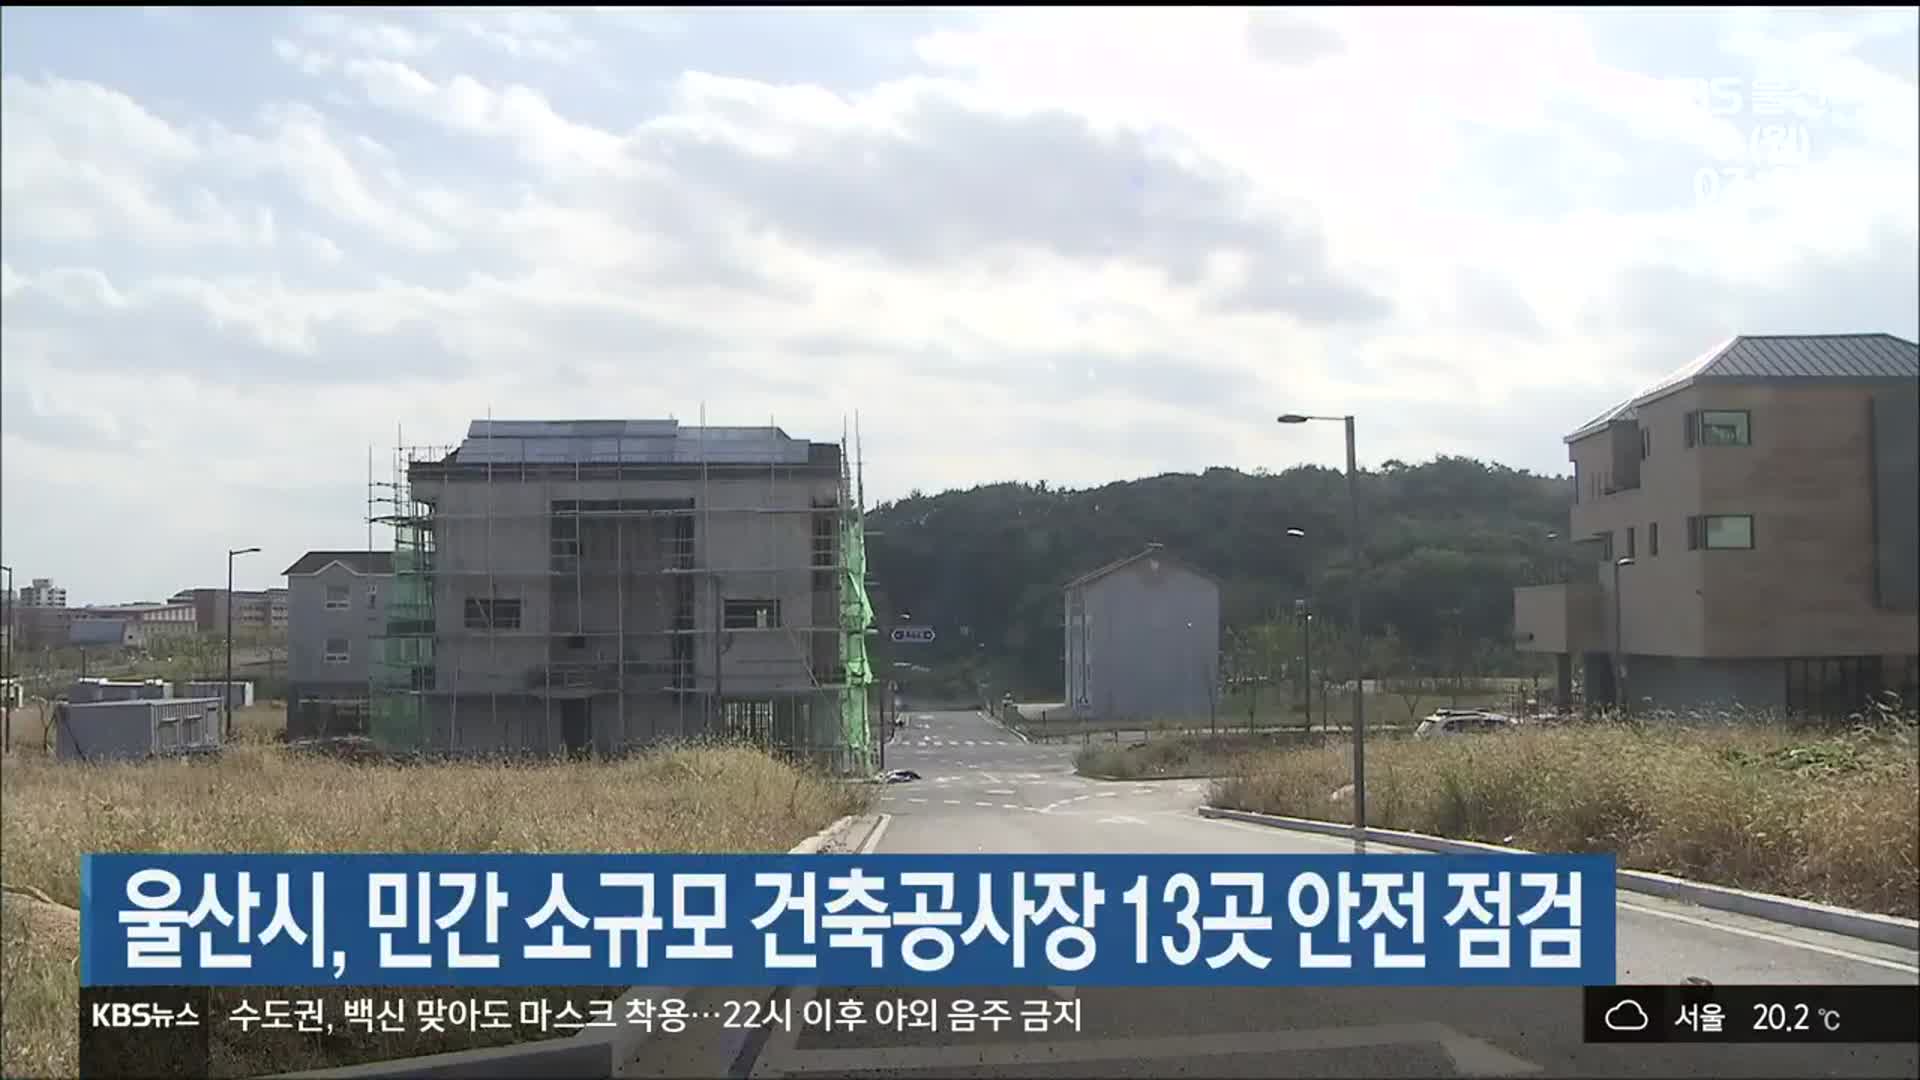 울산시, 민간 소규모 건축공사장 13곳 안전 점검